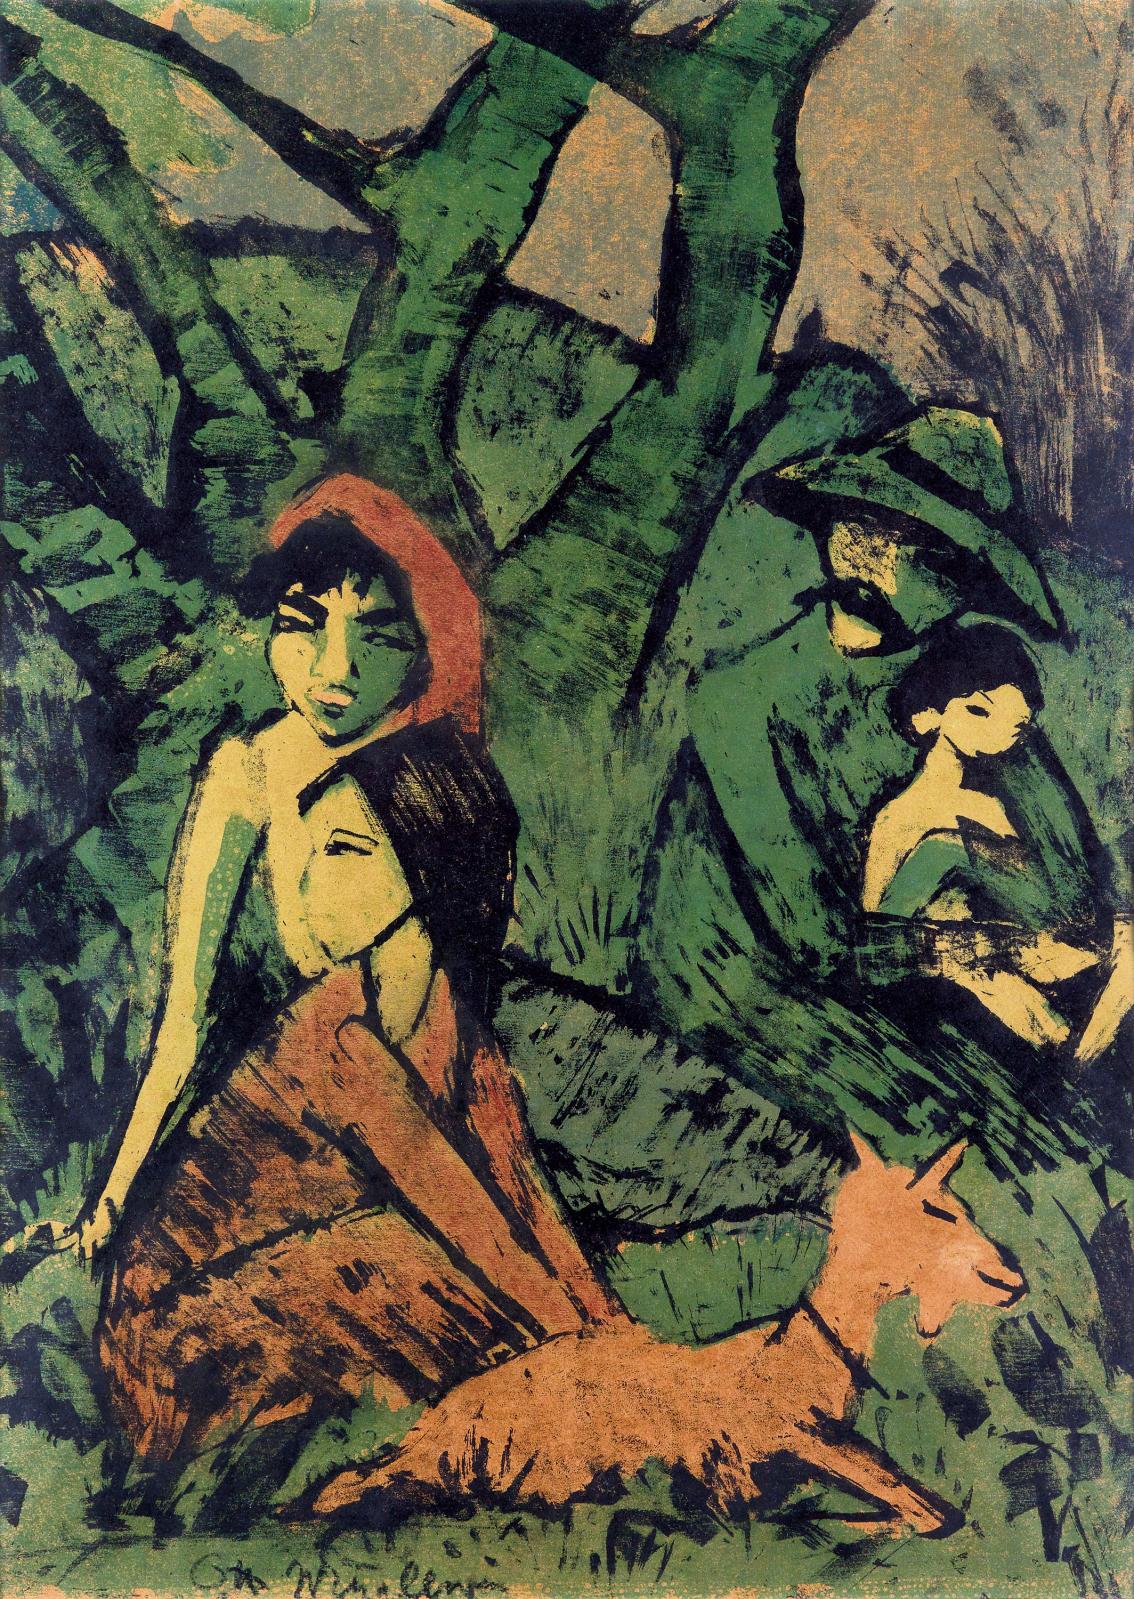 Otto Mueller, Lagernde Zigeunerfamilie mit Ziege (Famille tsigane dans un campement avec chèvre), 1926-1927, lithographie en couleurs sur papier vélin